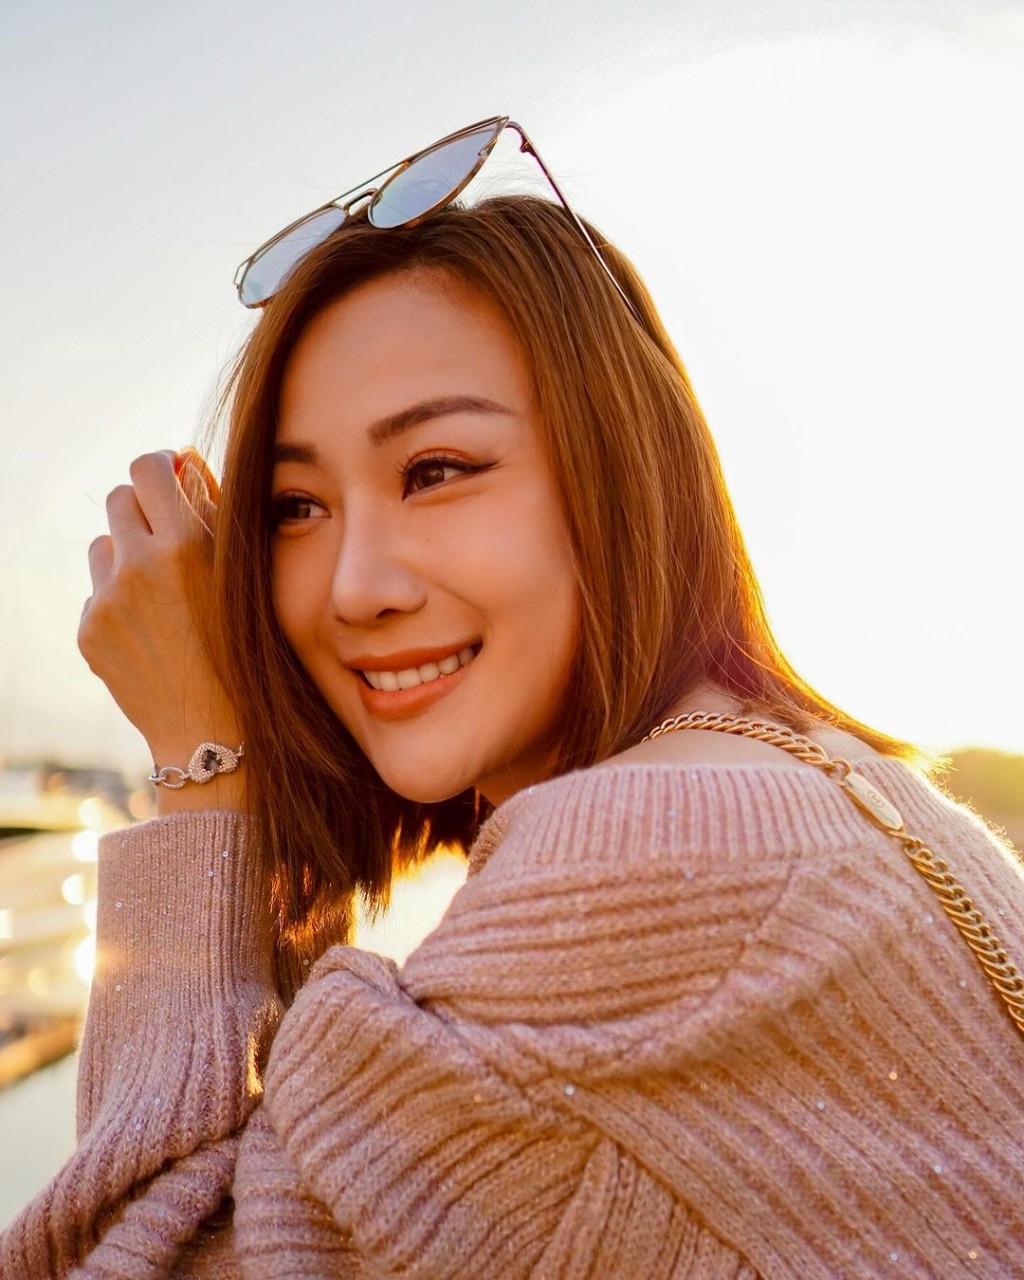 朱智贤获网民留言祝福她与谢东闵要开心幸福。